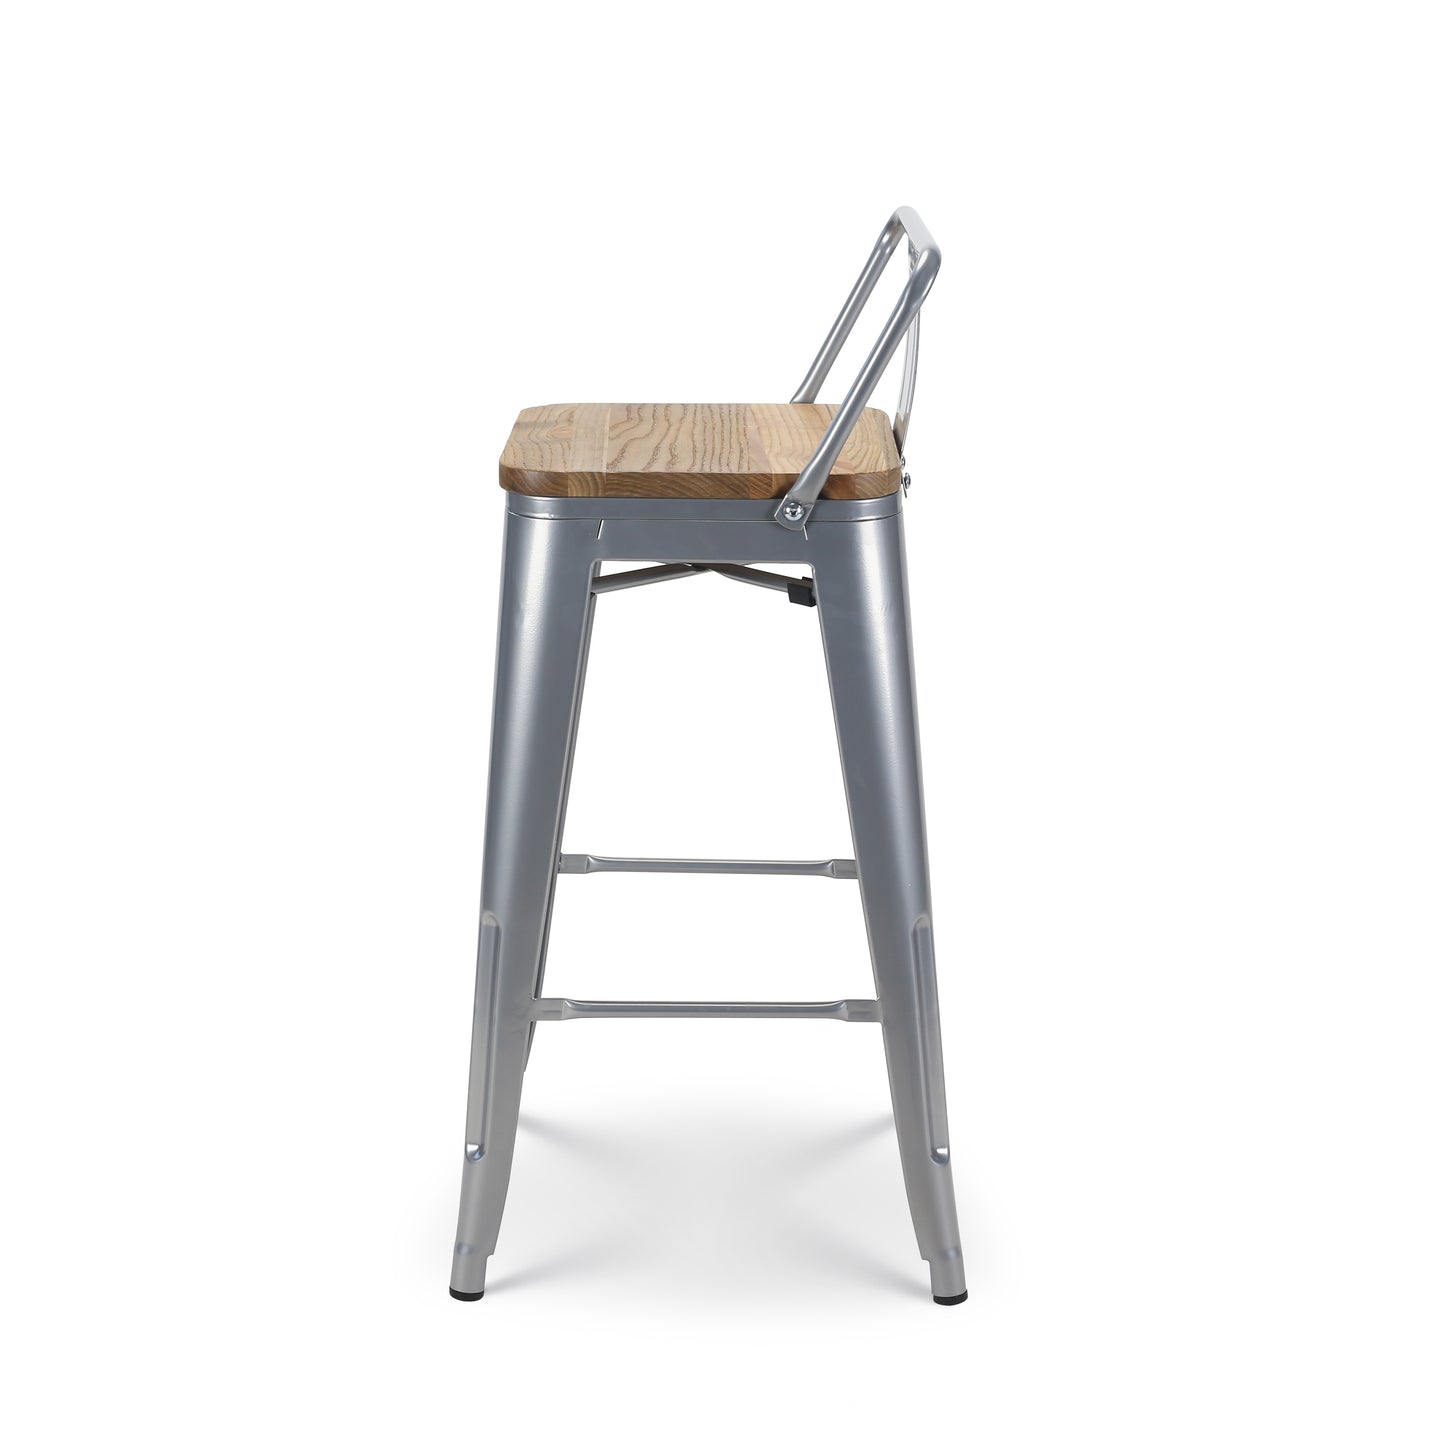 Tabouret de bar en métal gris argenté style industriel avec dossier et assise en bois clair - Hauteur 66 cm